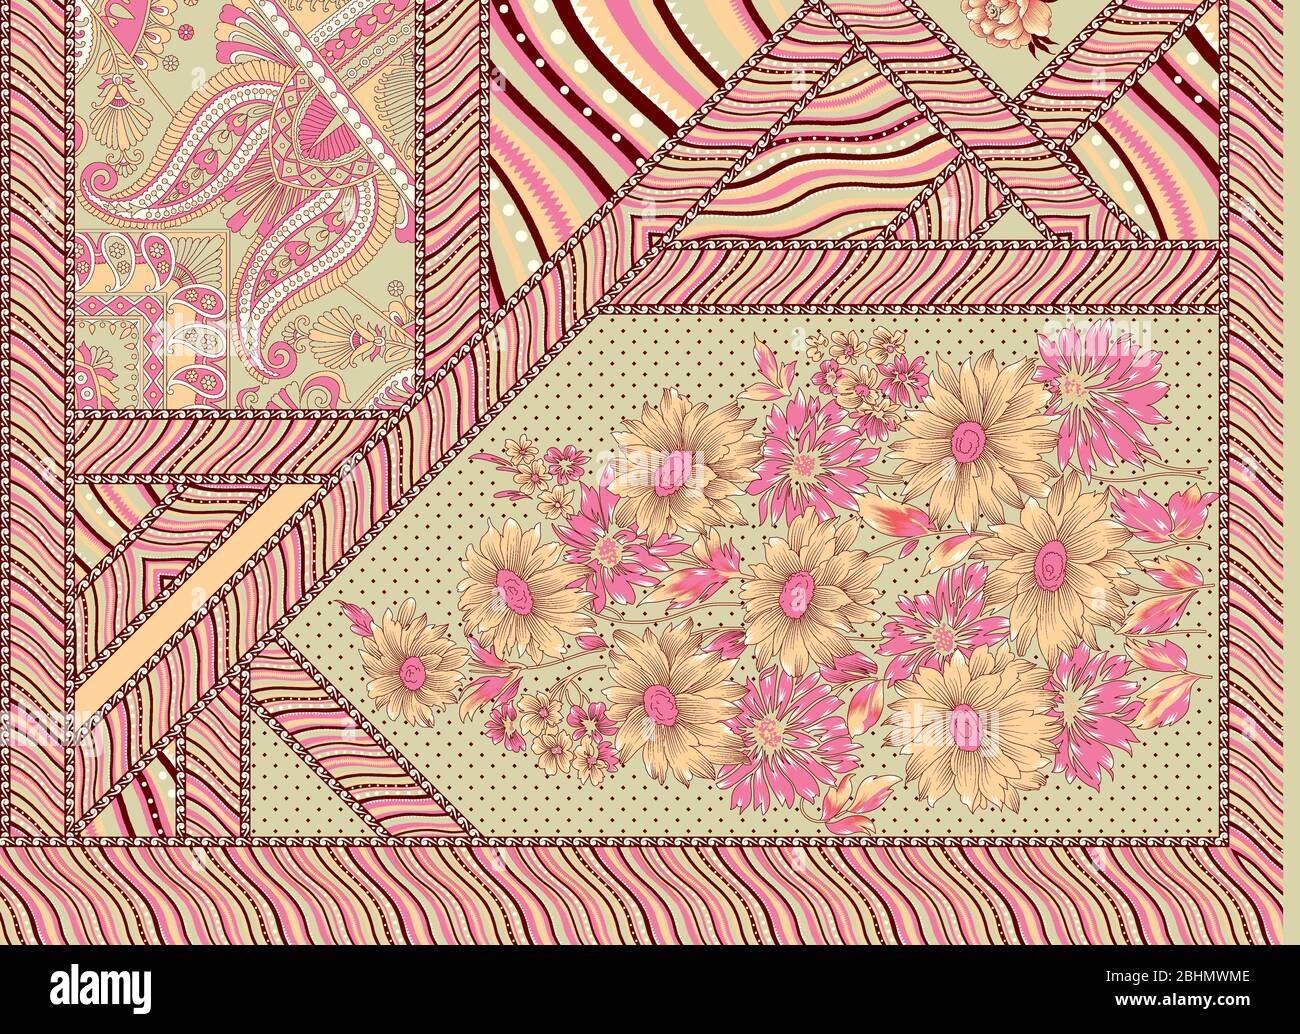 Dekorative Blumenblume und geometrisches Muster Stockfoto